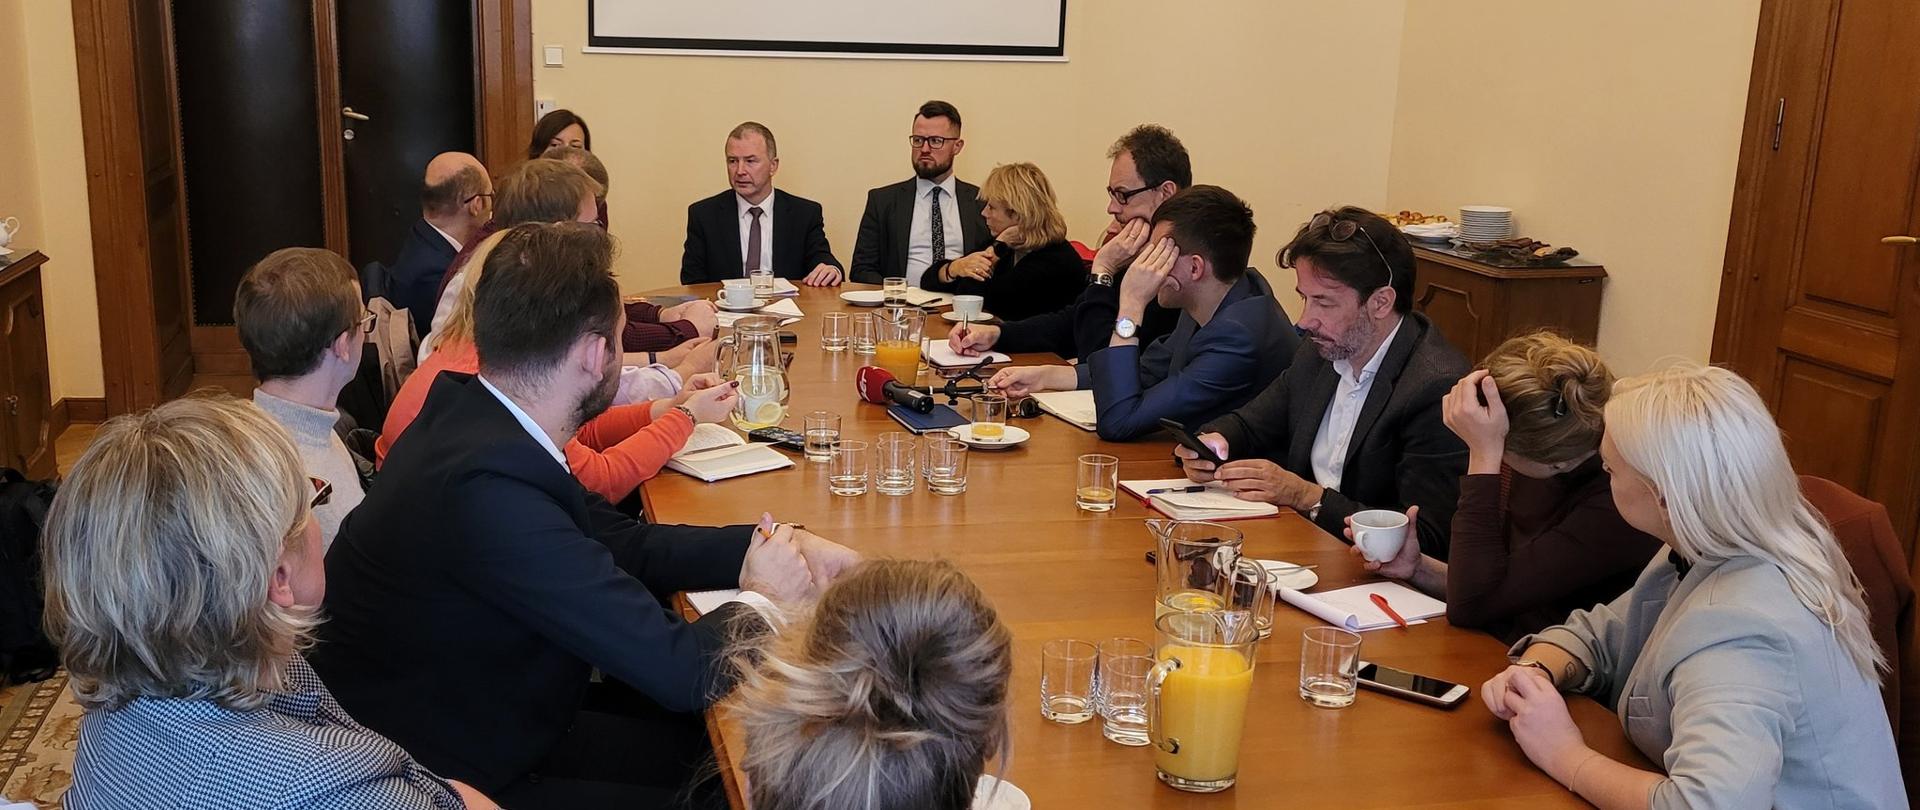 Wizyta studyjna polskich dziennikarzy w Ambasadzie RP w Pradze